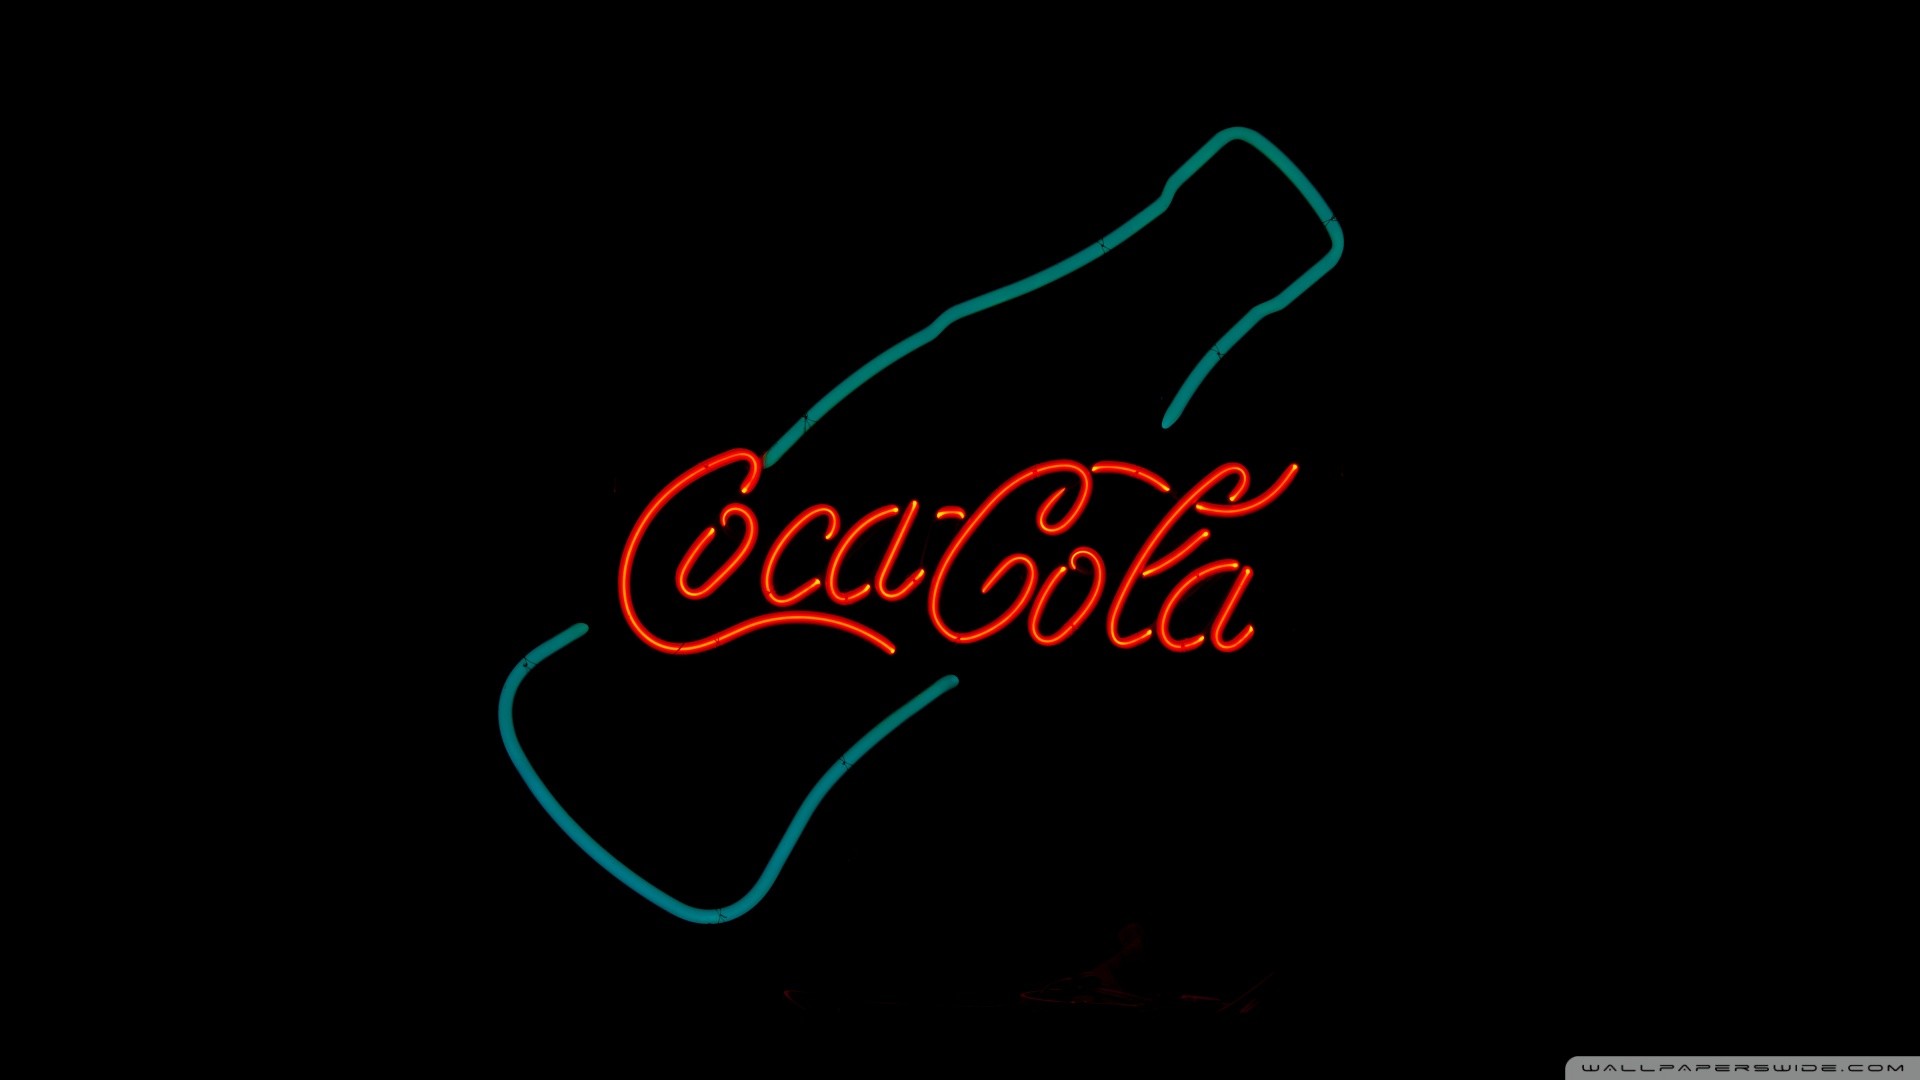 1920x1080 Coca Cola Wallpaper Iphone